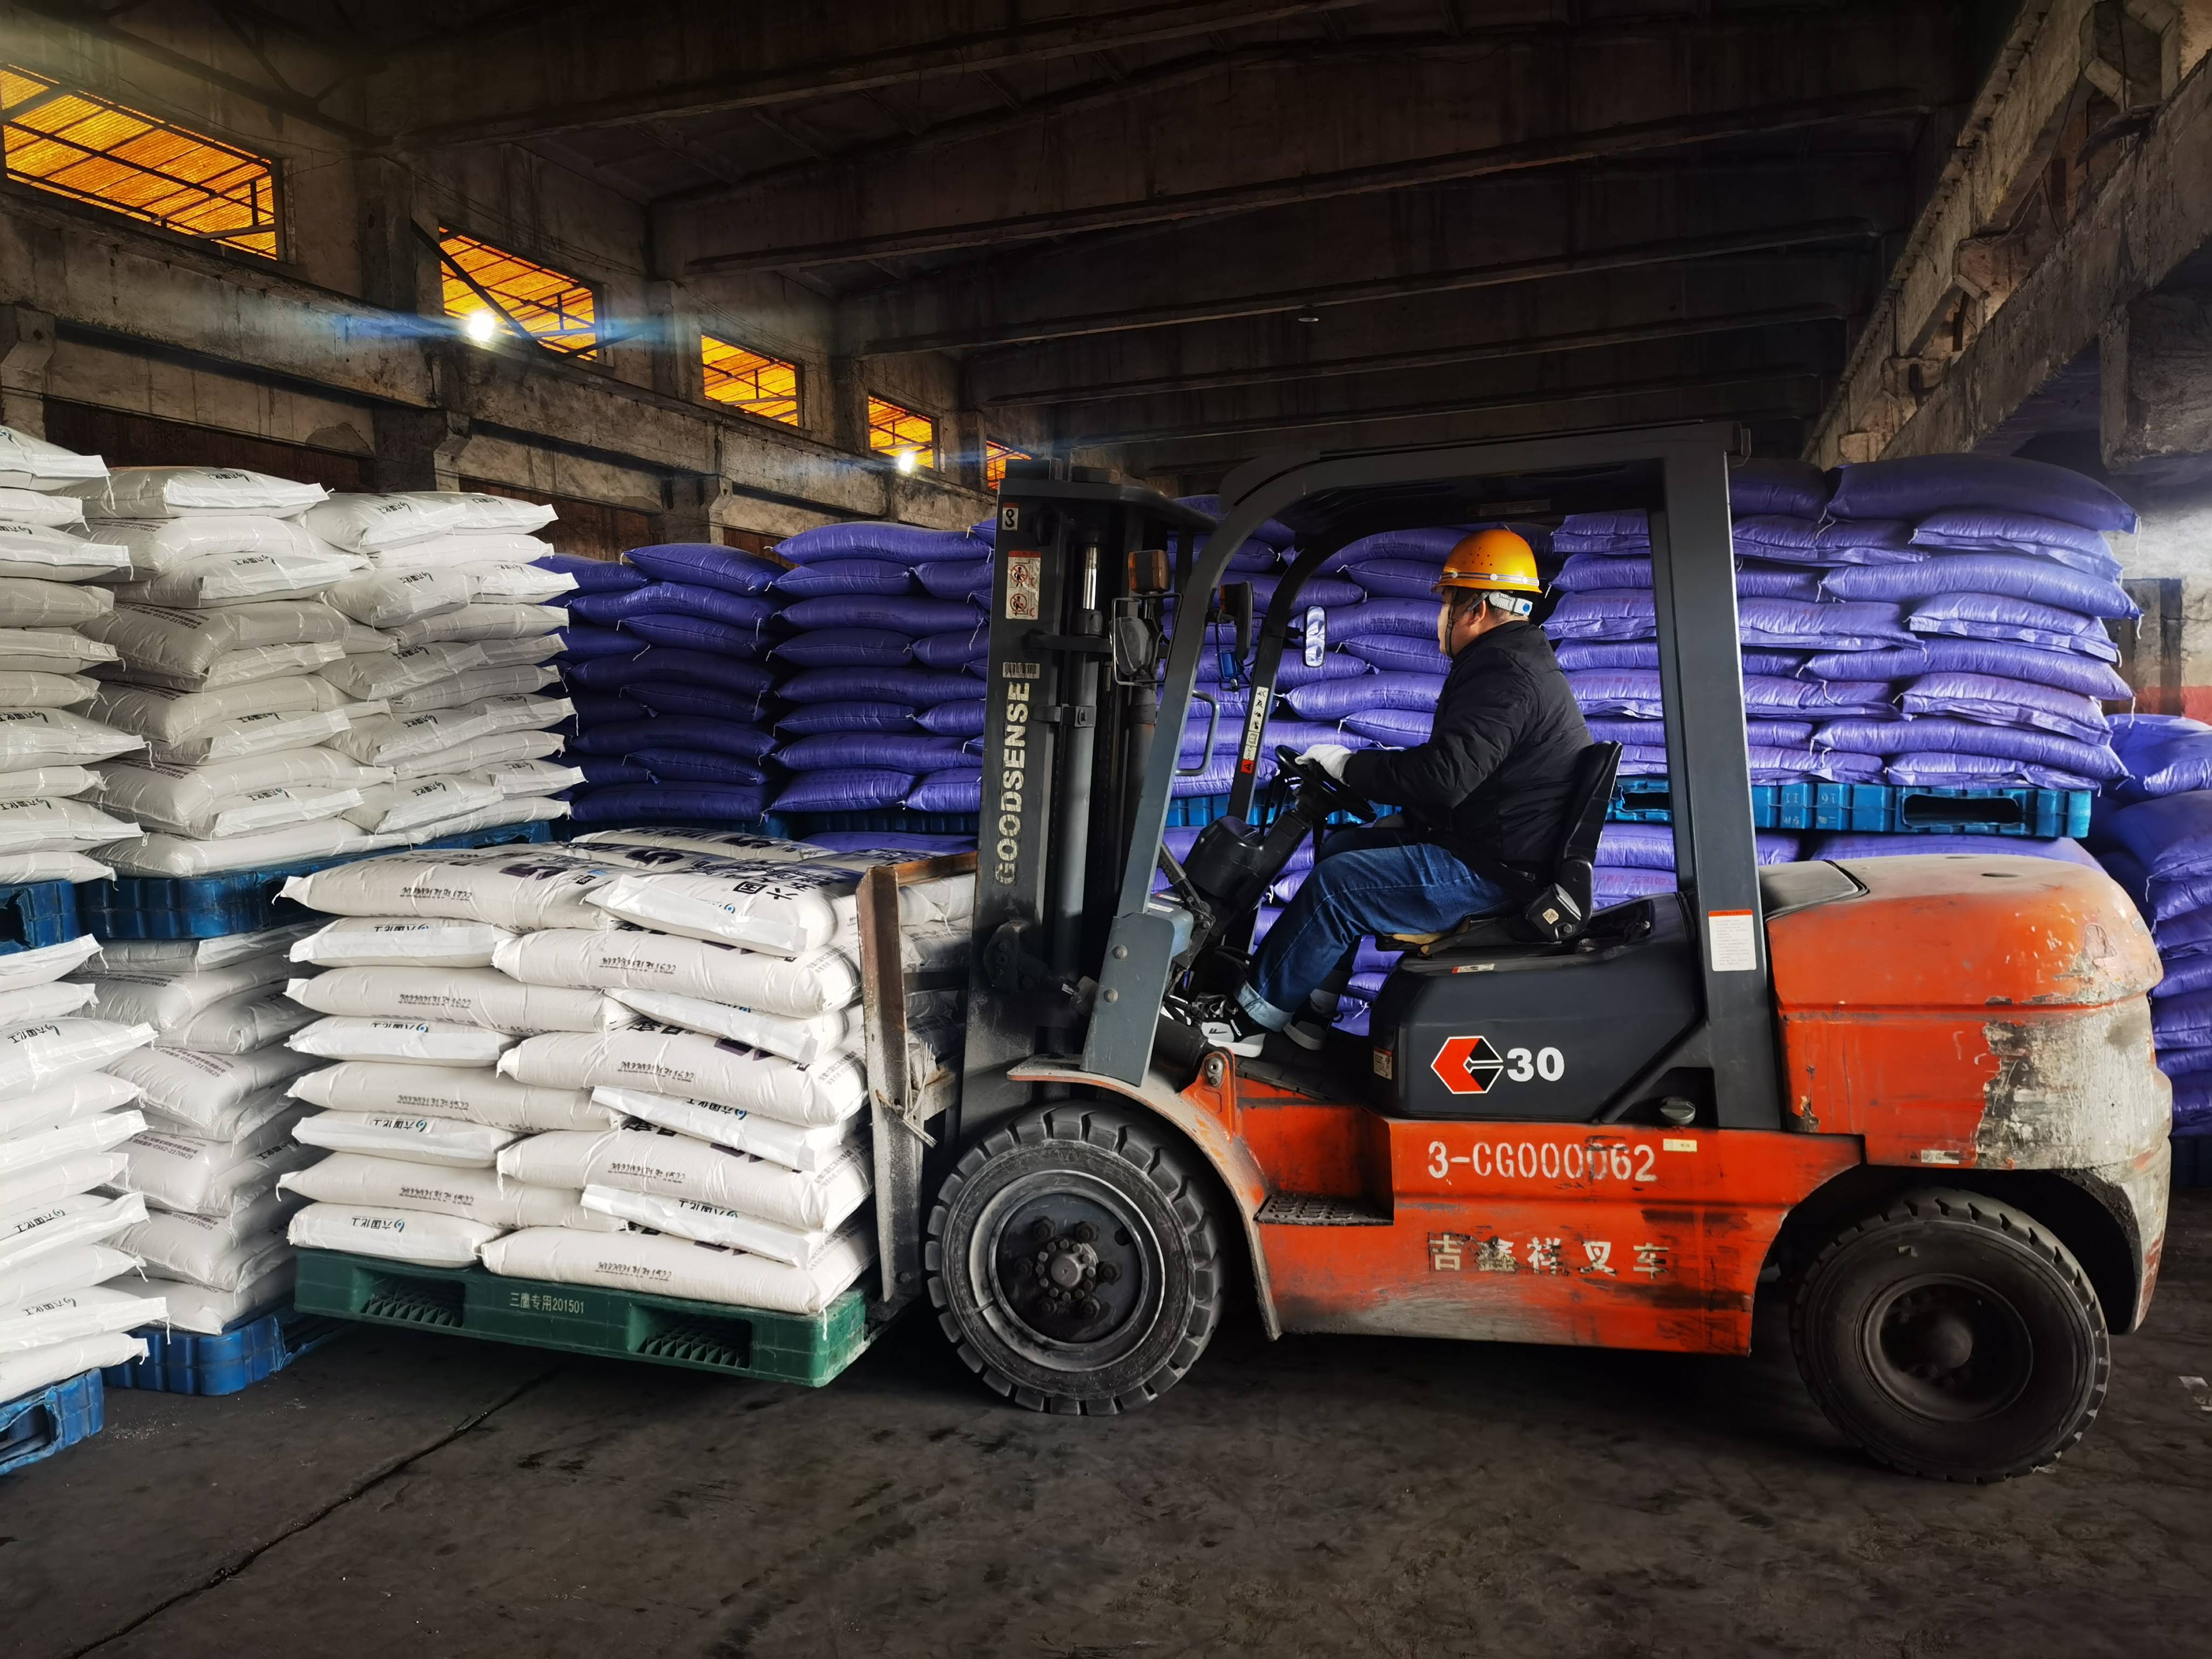 安徽六国化工股份有限公司专用线内，工作人员在装运化肥。    叶晓刚    摄